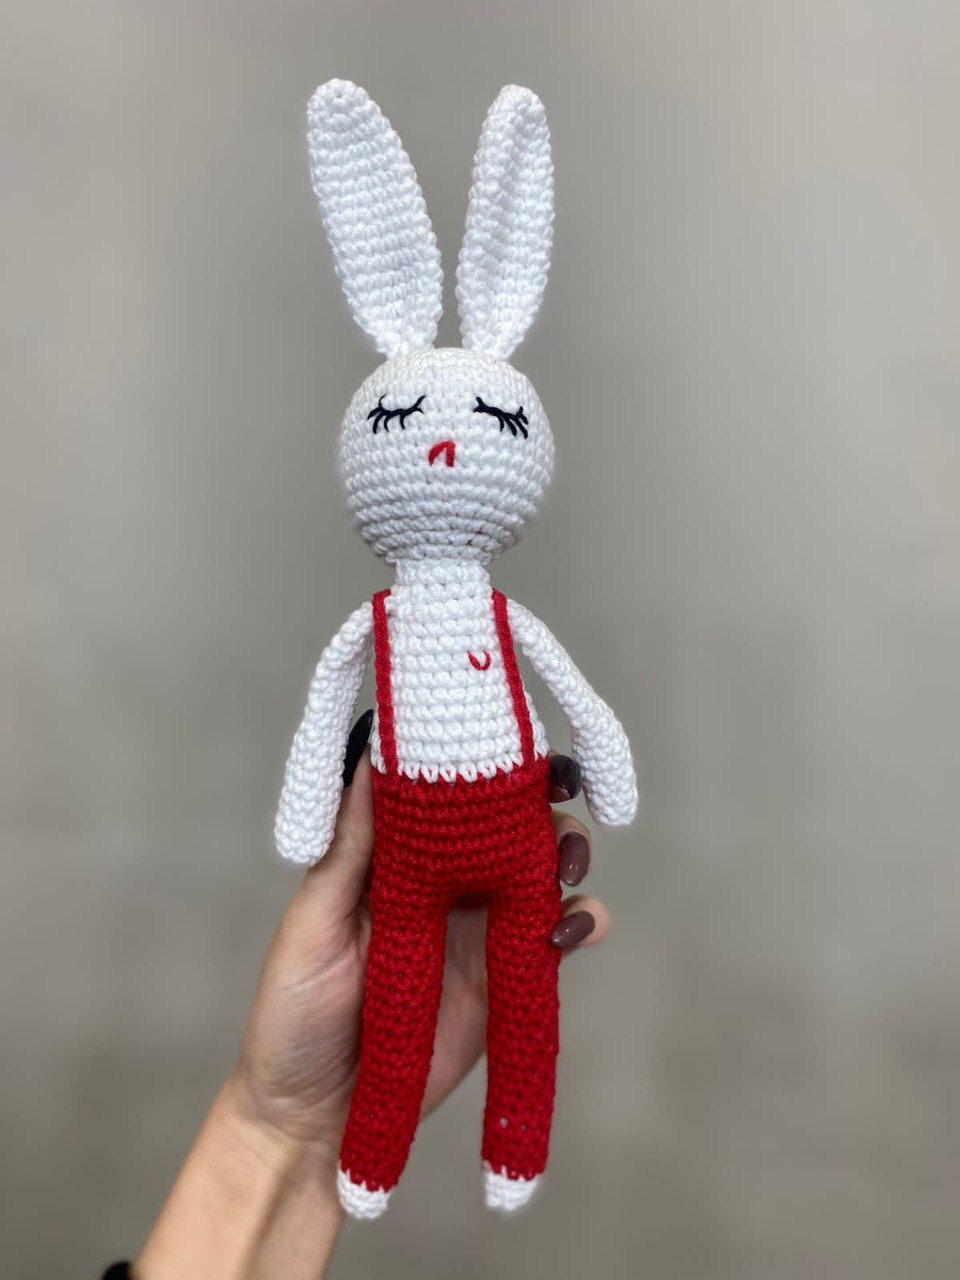 Заяц и Кролик - купить мягкие игрушки в интернет магазине Игроландия